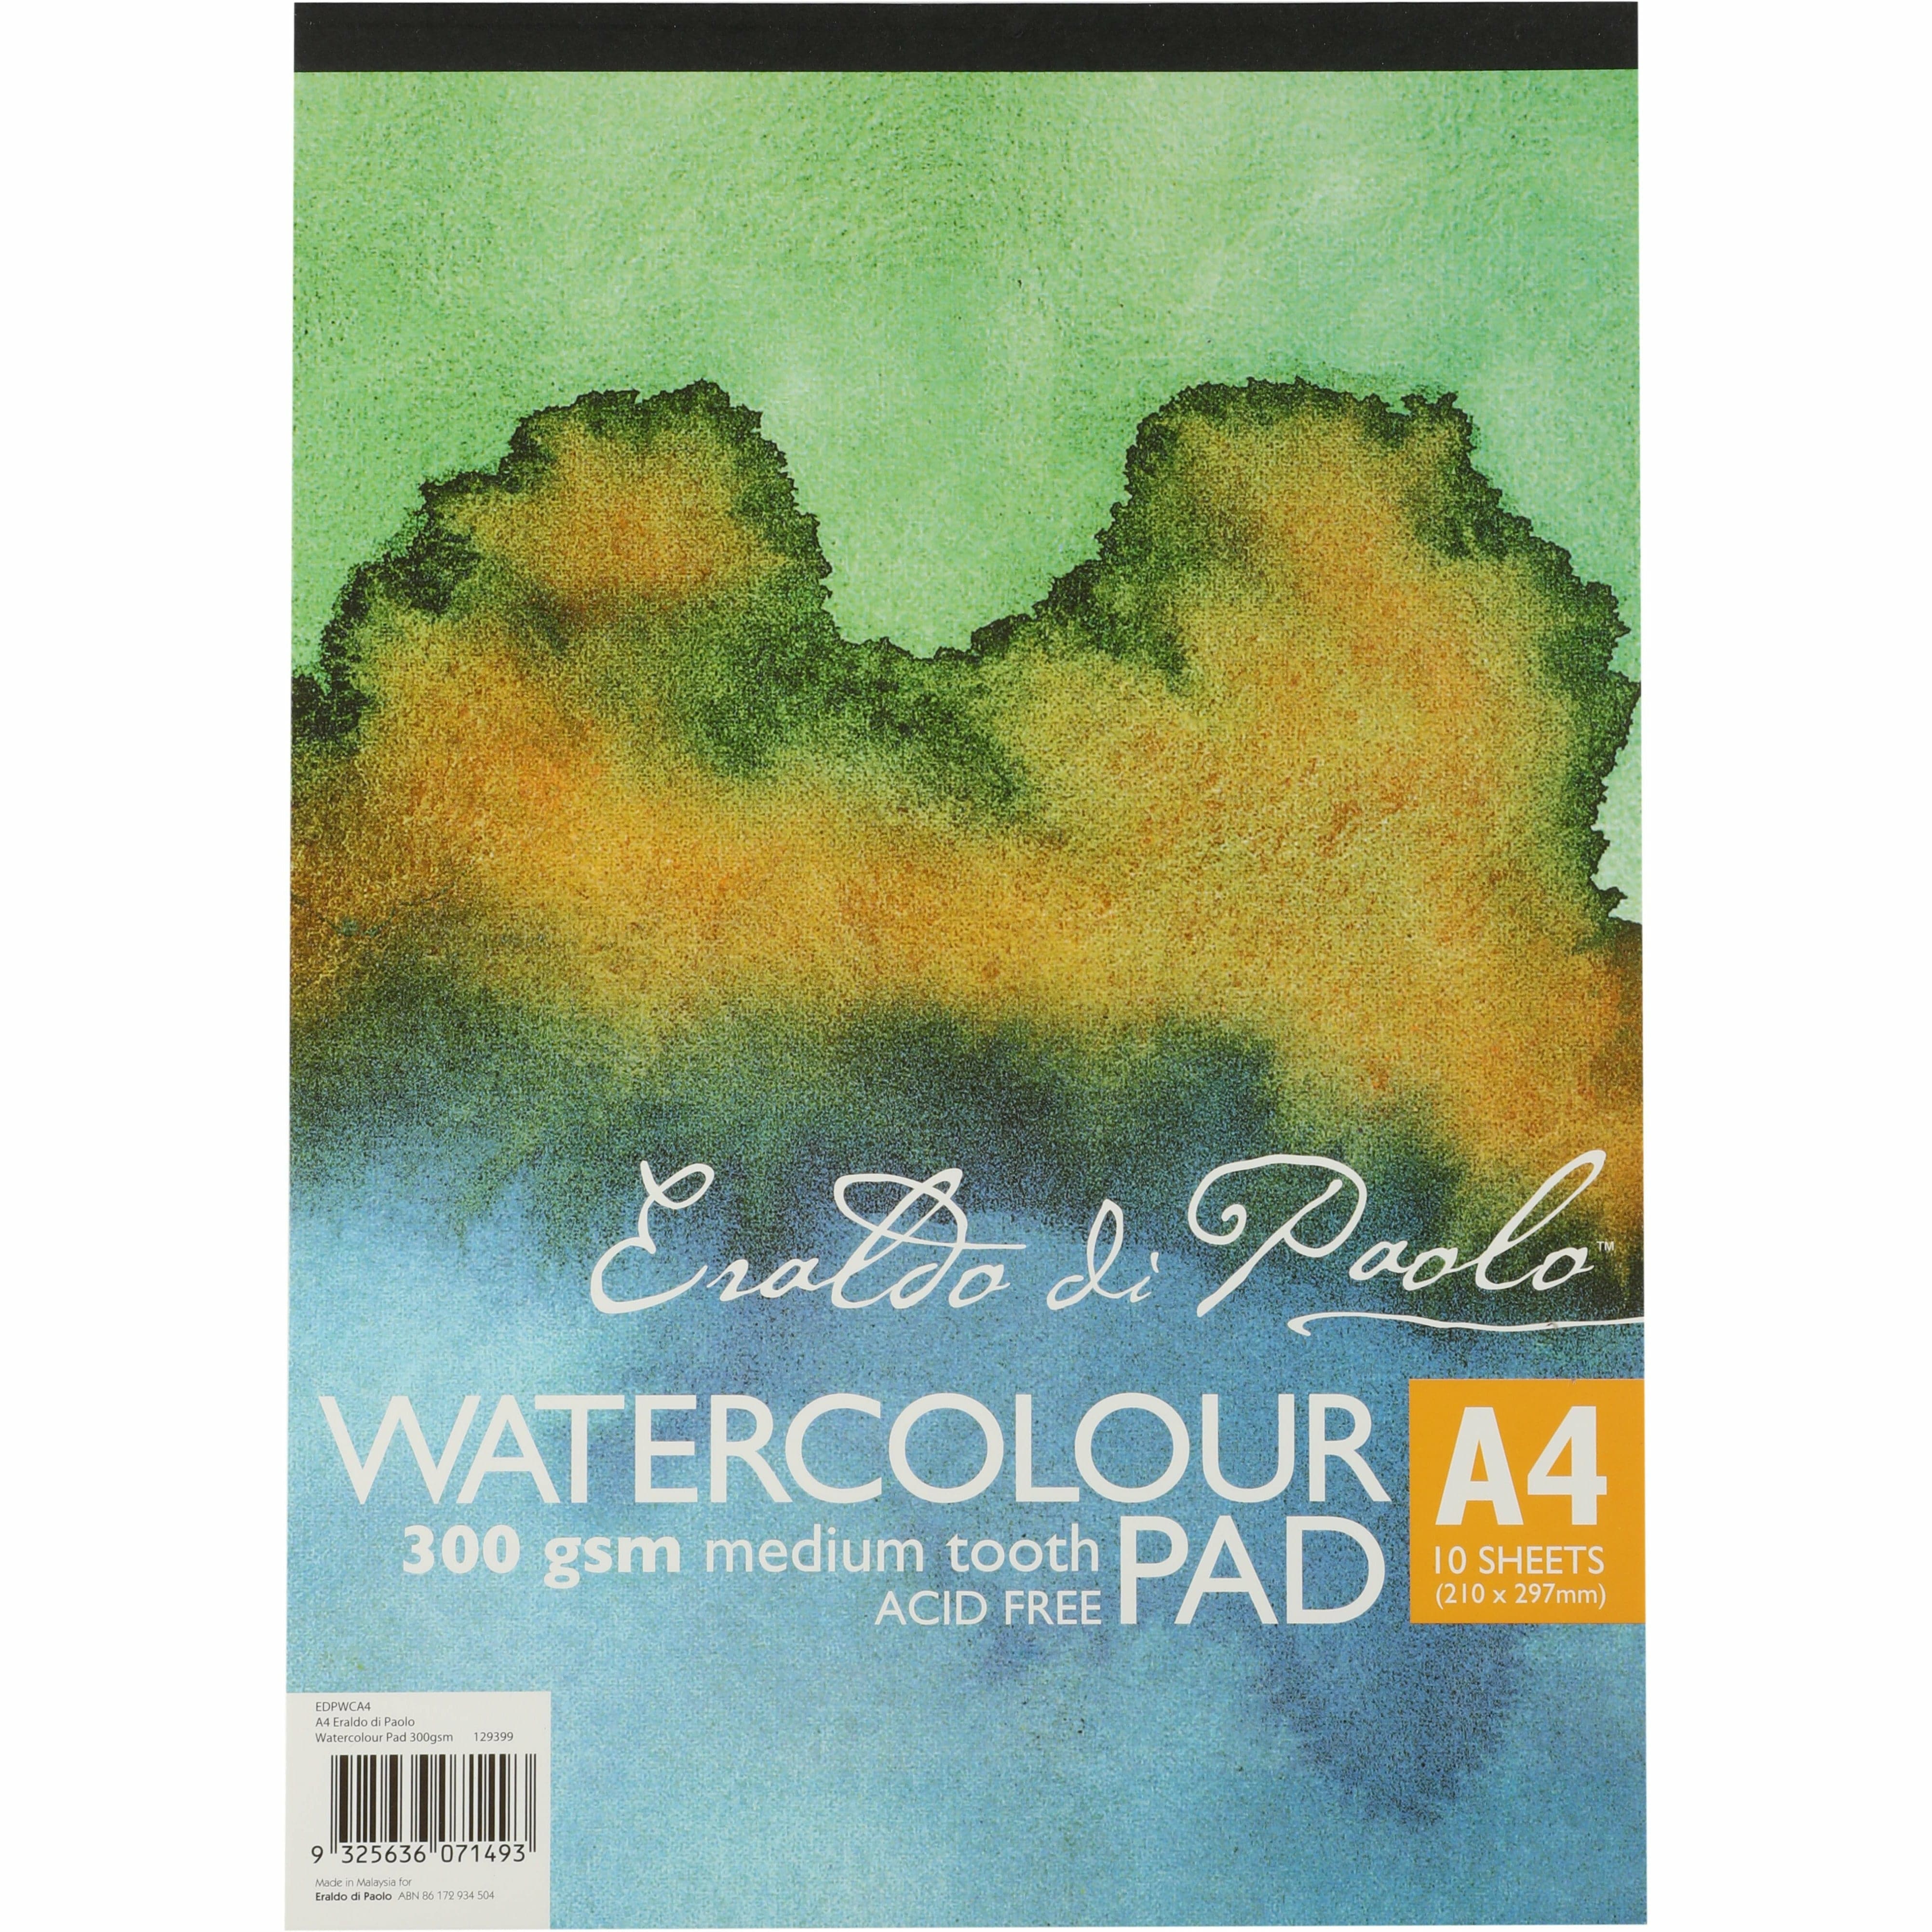 Image of Eraldo di Paolo A4 Watercolour Pad Cold Pressed 300g 10 Sheets